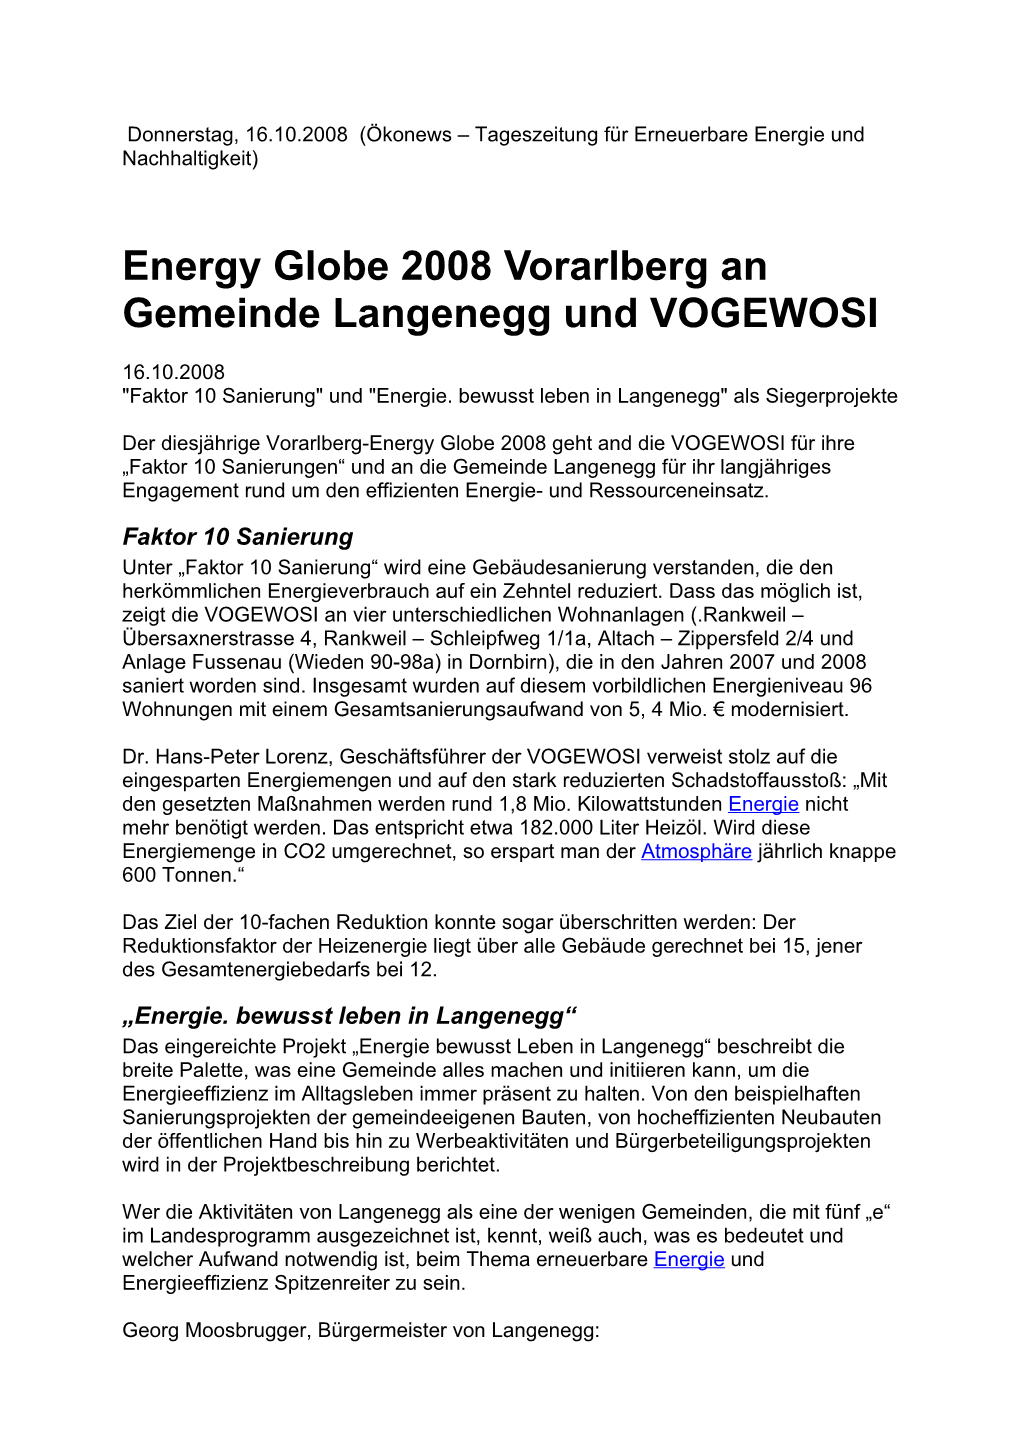 Energy Globe 2008 Vorarlberg an Gemeinde Langenegg Und VOGEWOSI